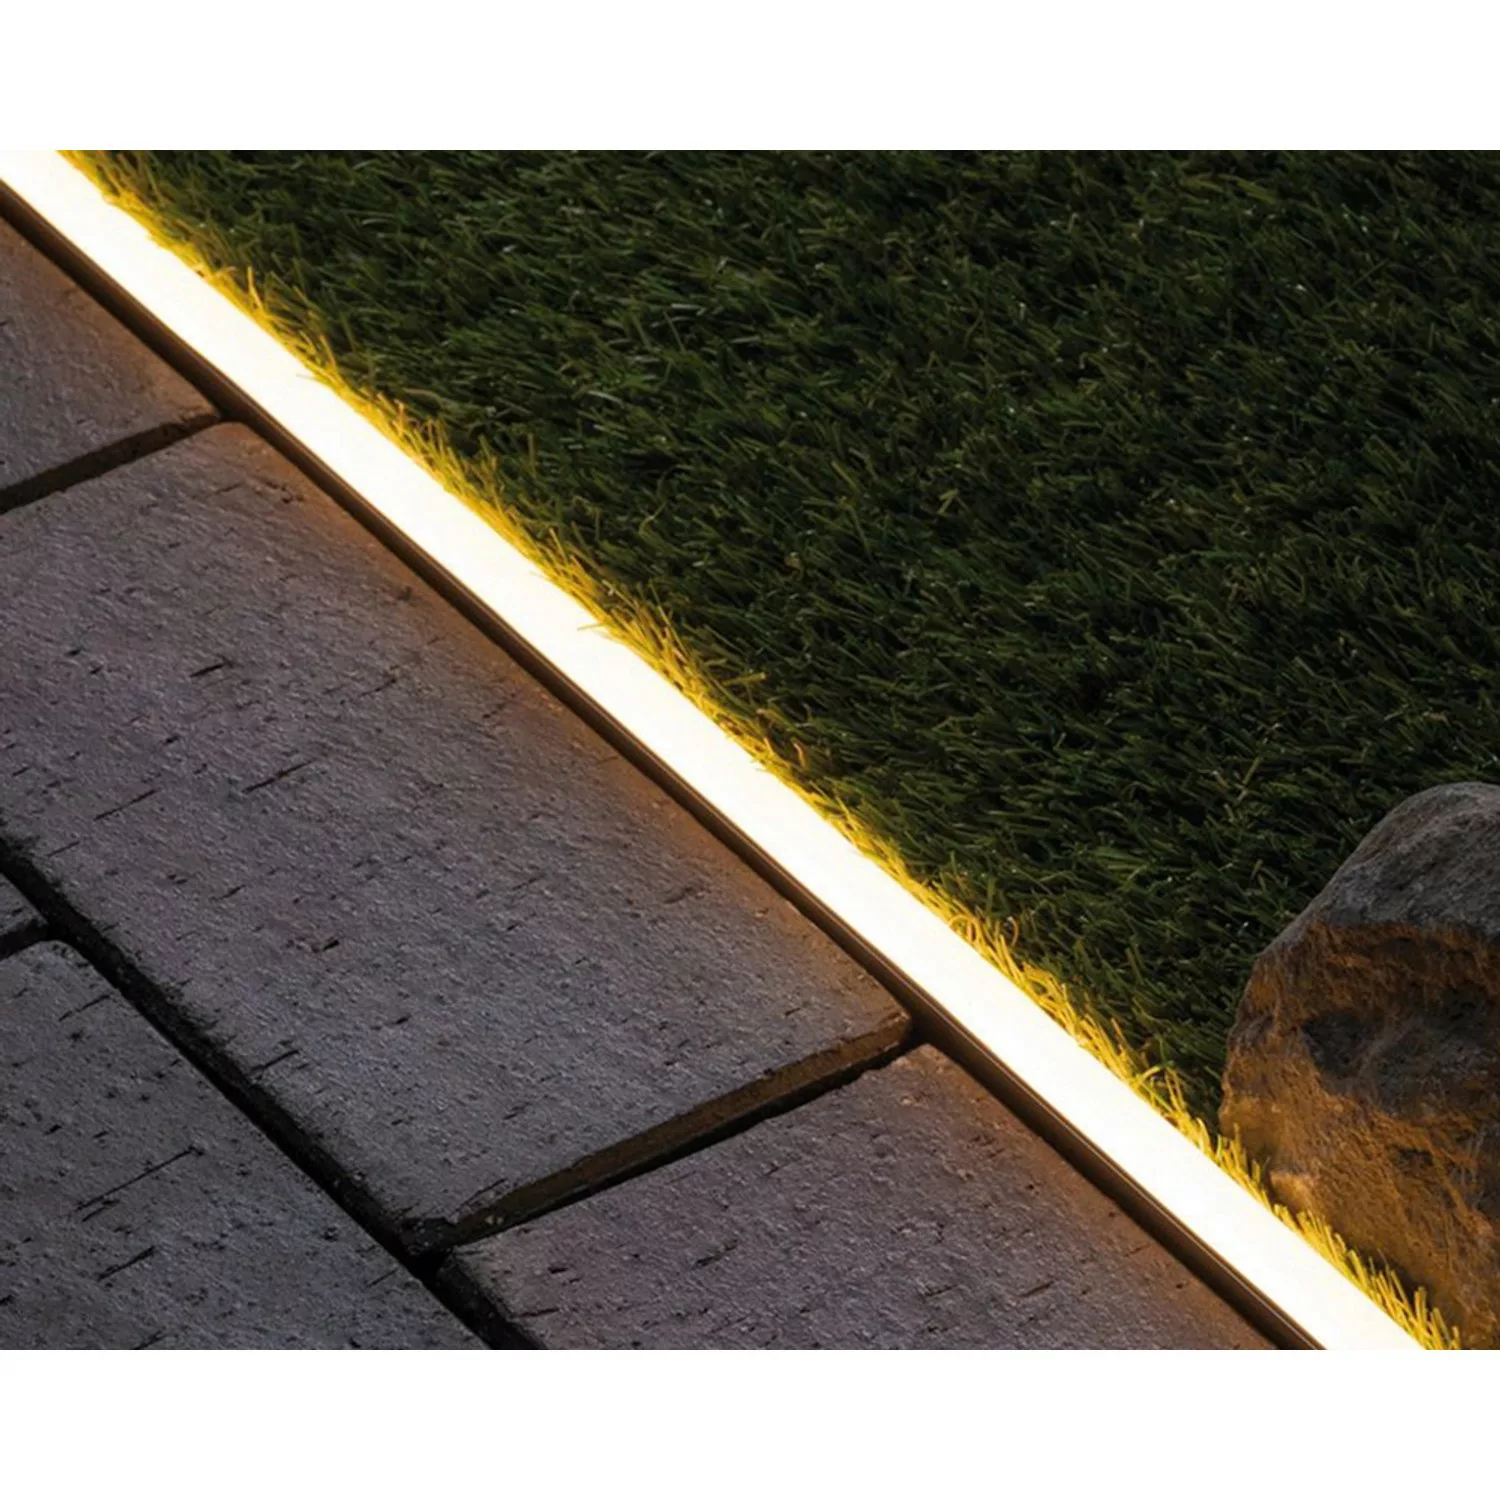 Paulmann Plug & Shine Aluminiumprofil für LED-Stripe für Wege 1 m günstig online kaufen